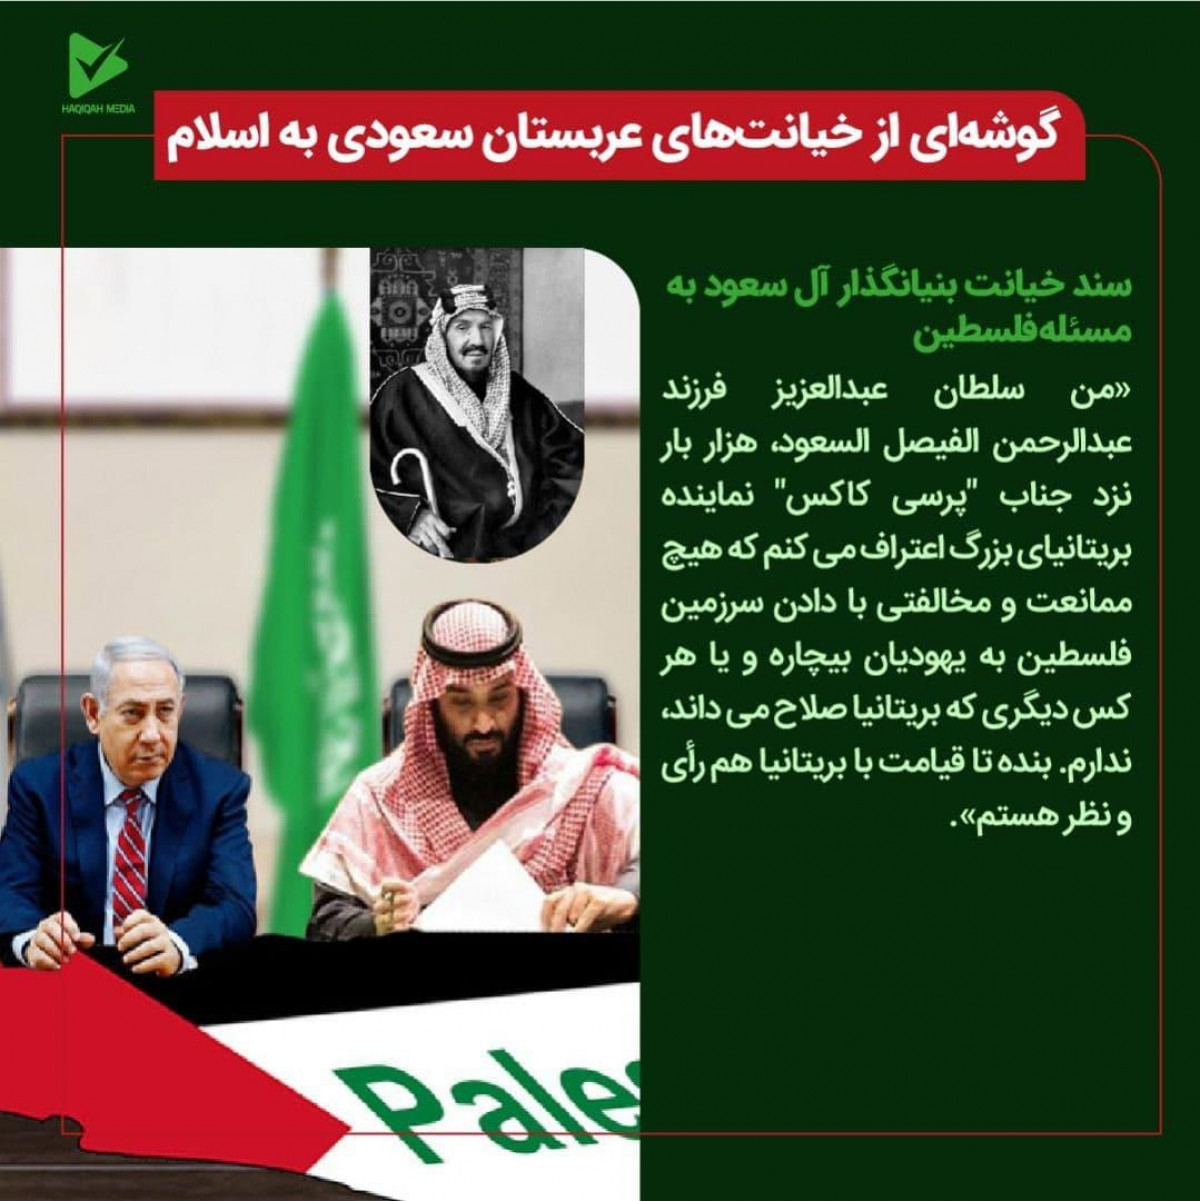 گوشه ای از خیانت های عربستان سعودی به اسلام/سند خیانت بنیانگذار آل سعود به مسئله فلسطین